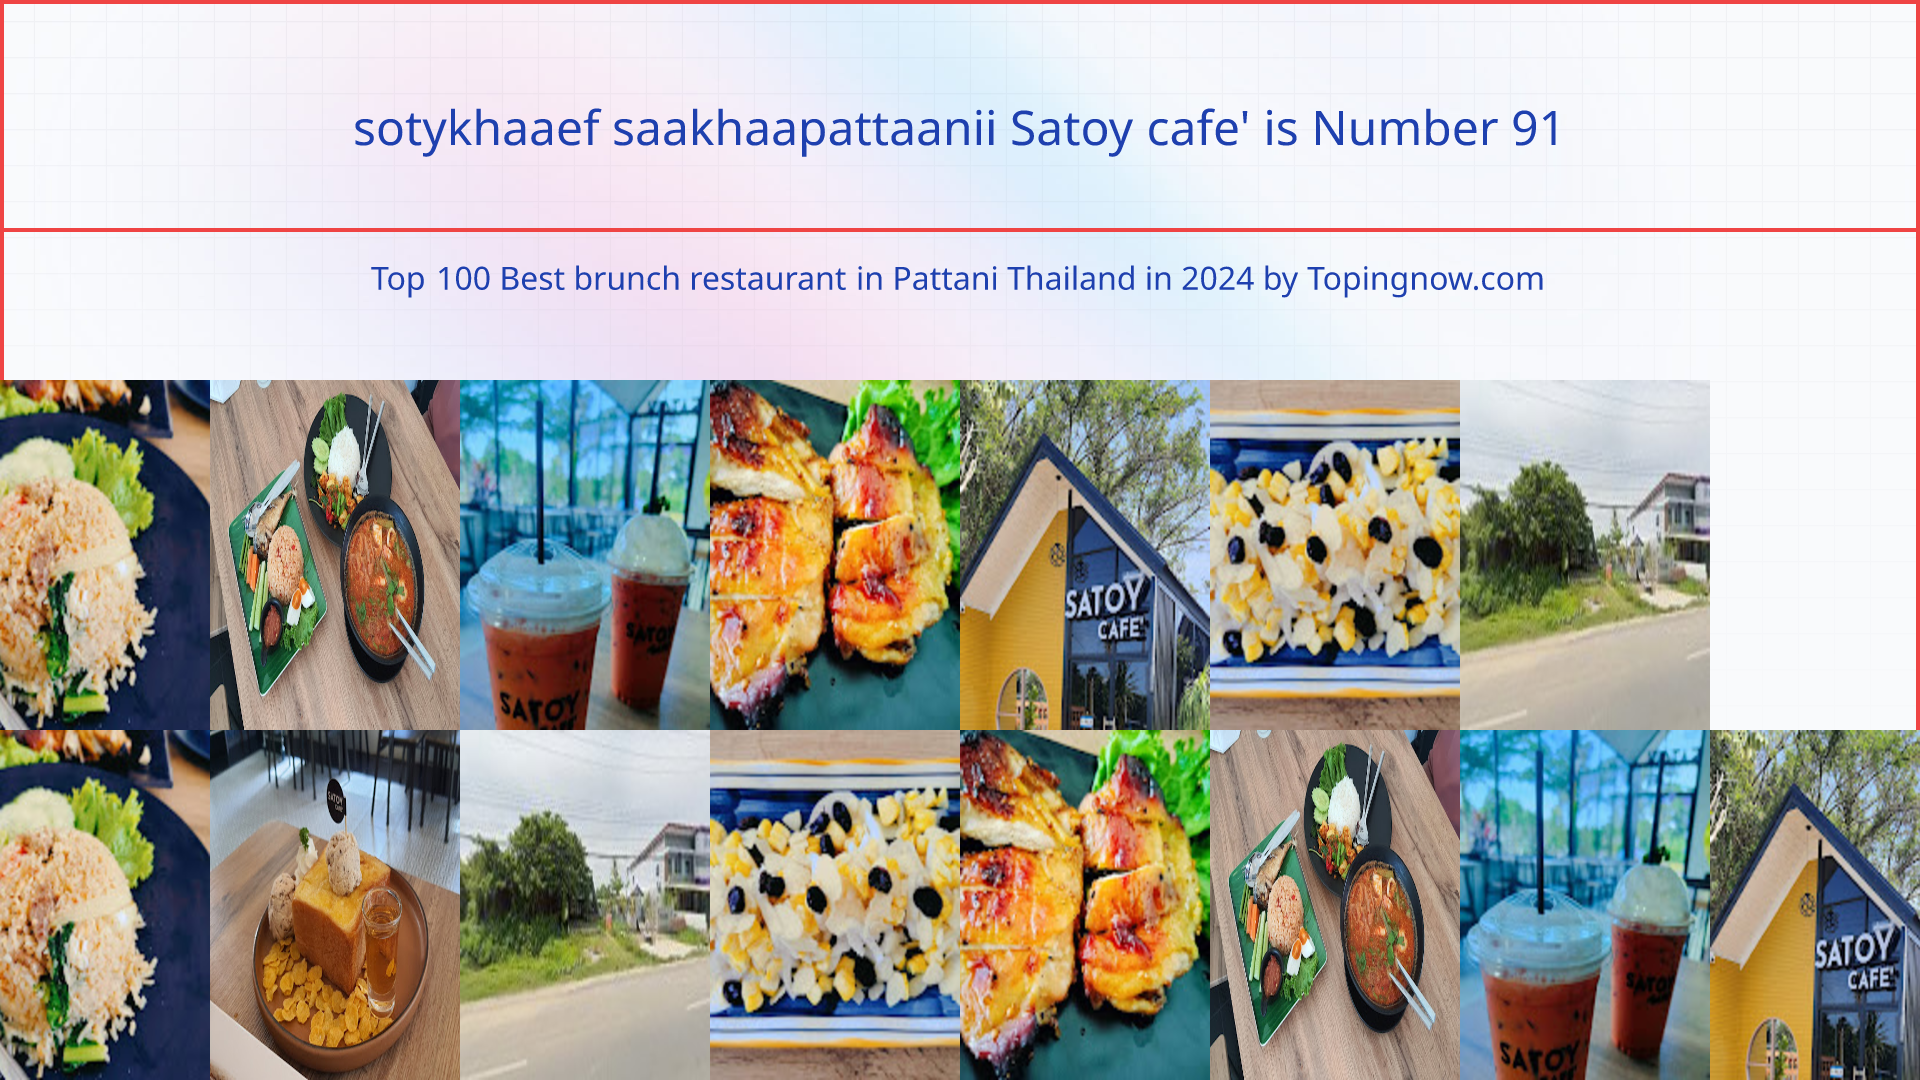 sotykhaaef saakhaapattaanii Satoy cafe': Top 100 Best brunch restaurant in Pattani Thailand in 2024